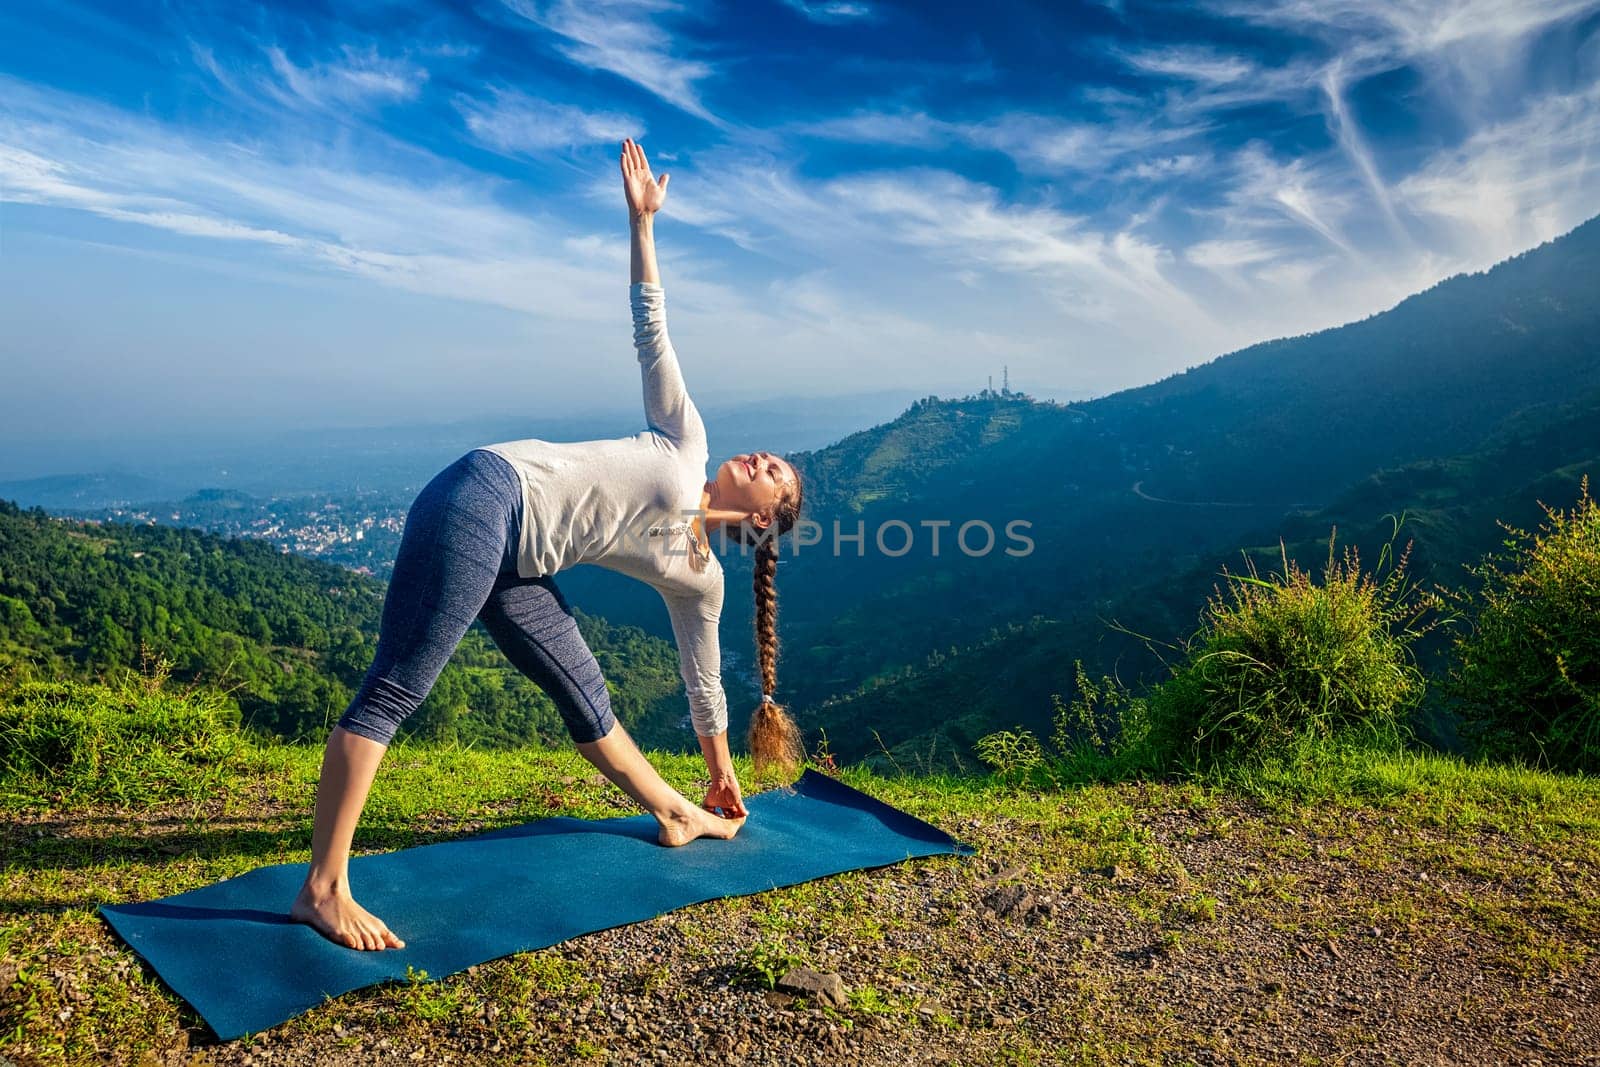 Woman doing Ashtanga Vinyasa yoga asana Utthita trikonasana by dimol